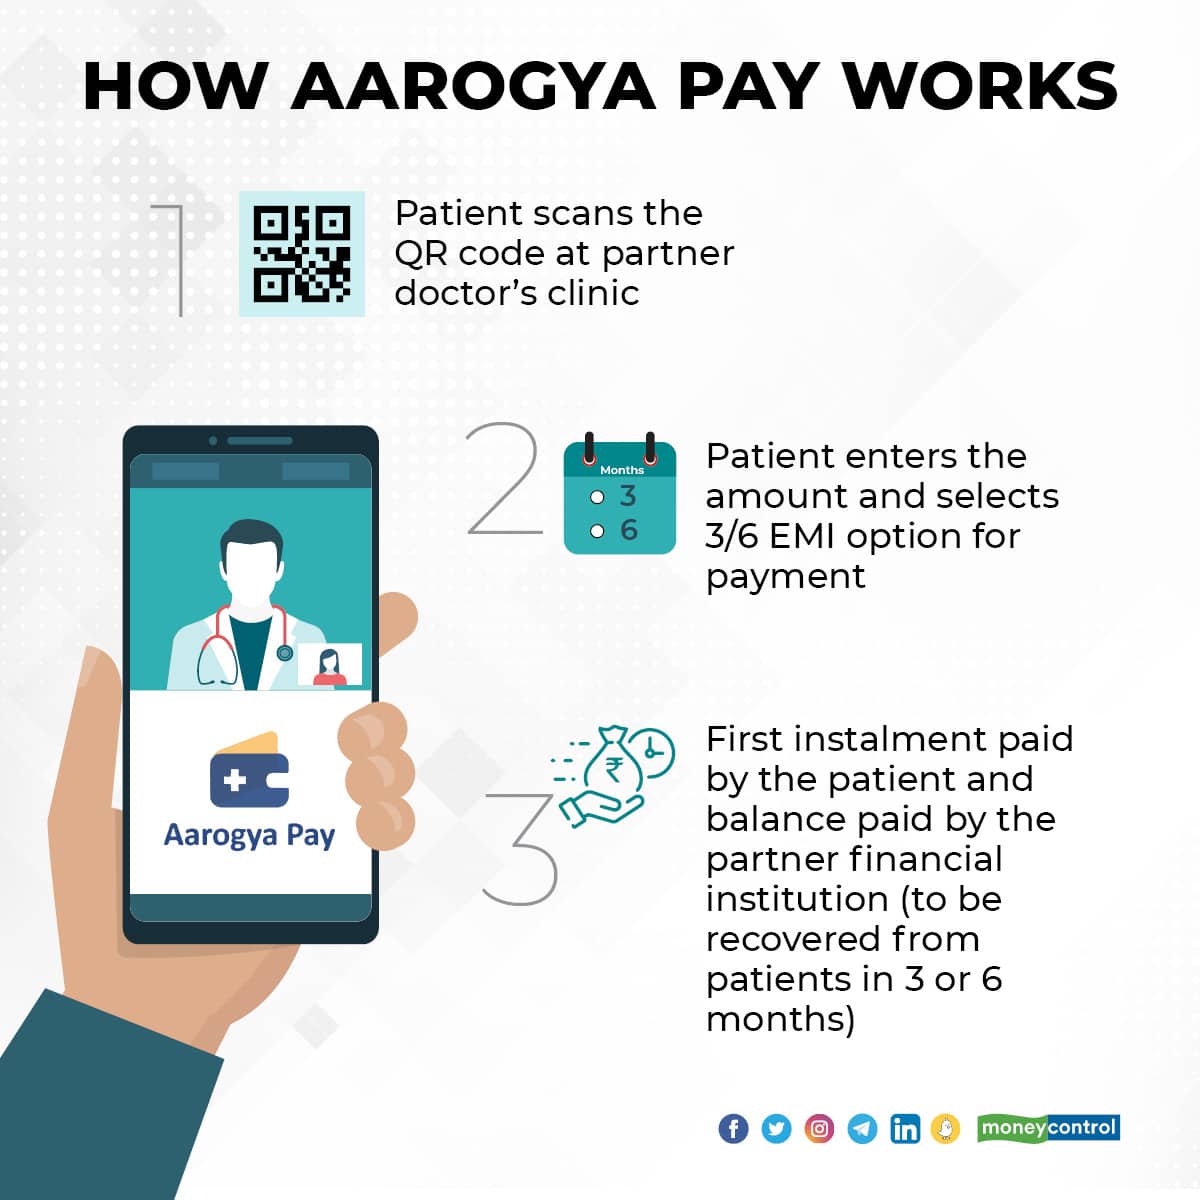 Aarogya Pay